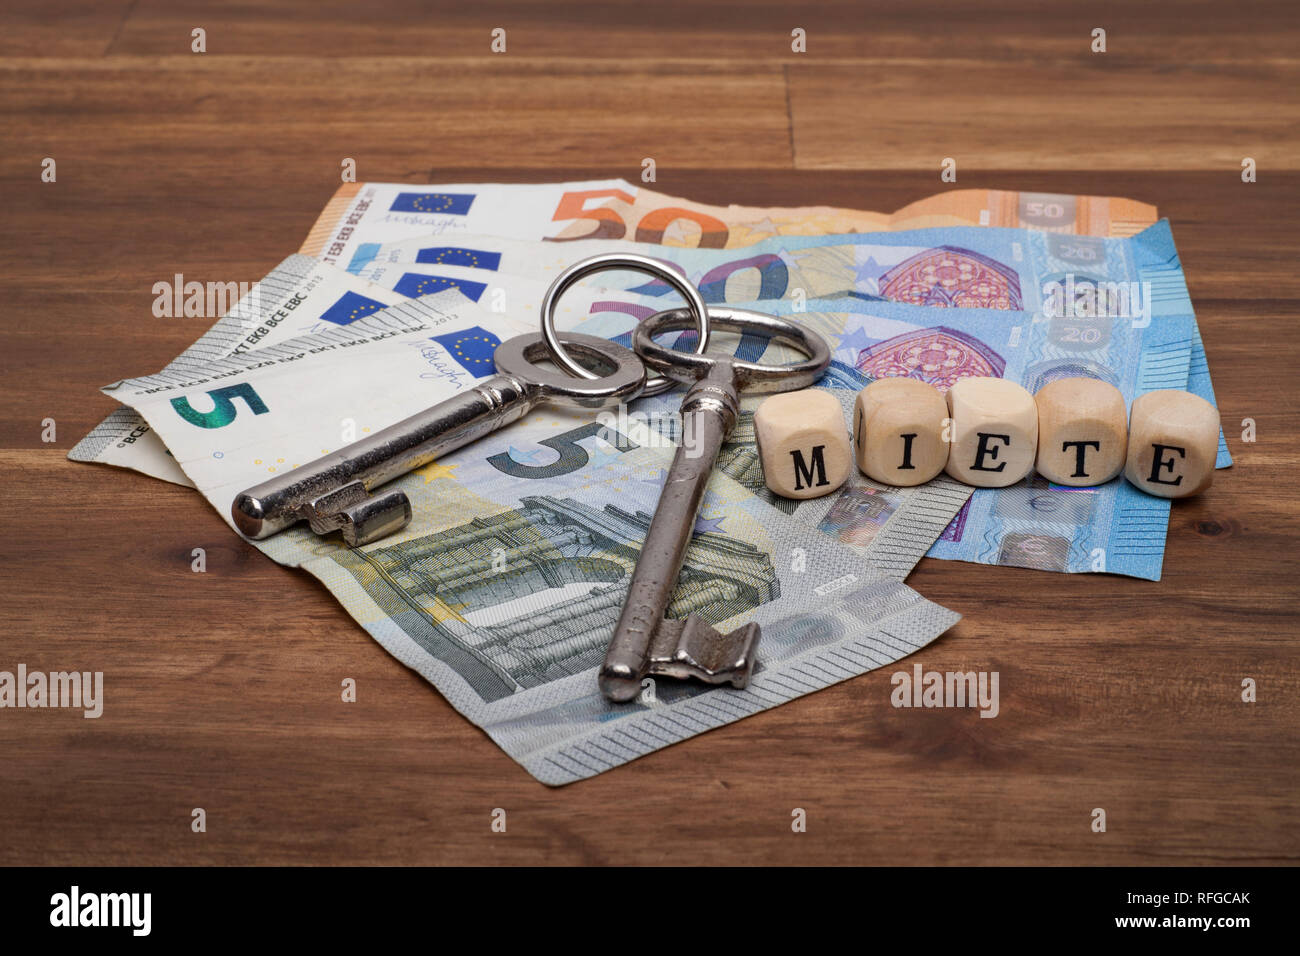 Die Euro Geldscheine Münzen und Schlüssel liegen auf dem Tisch mit dem Wort Miete. Stock Photo